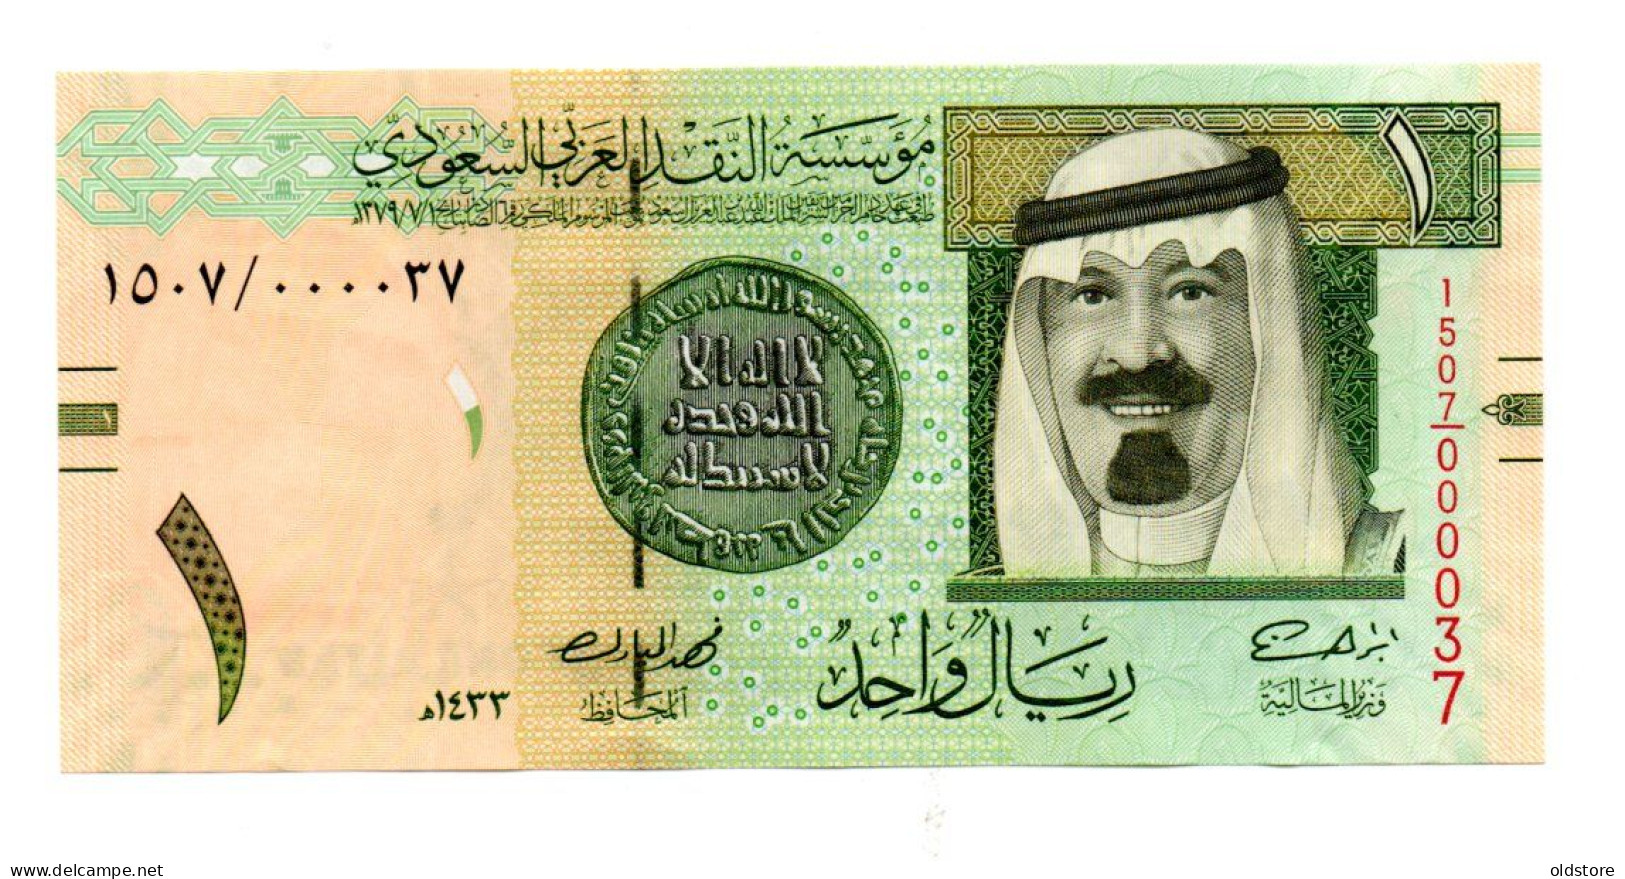 Saudi Arabia Banknotes - One Riyal 2012 Low Serial Number ( 000037 ) - UNC - Saudi Arabia